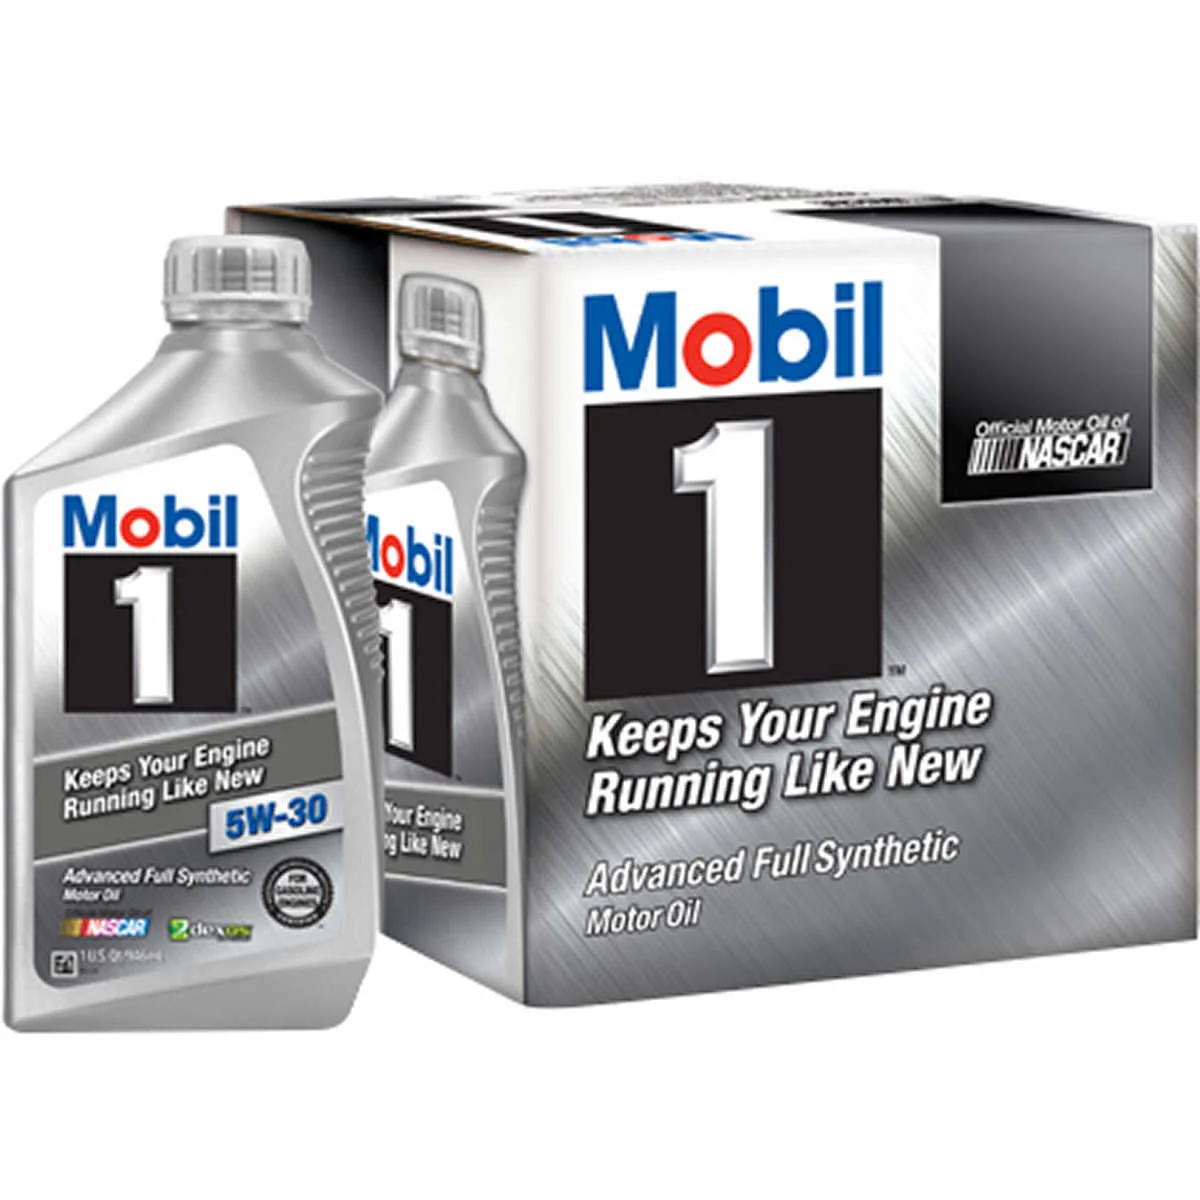 mobil-1-full-synthetic-5w-30-motor-oil-1-quart-pack-of-6-buy